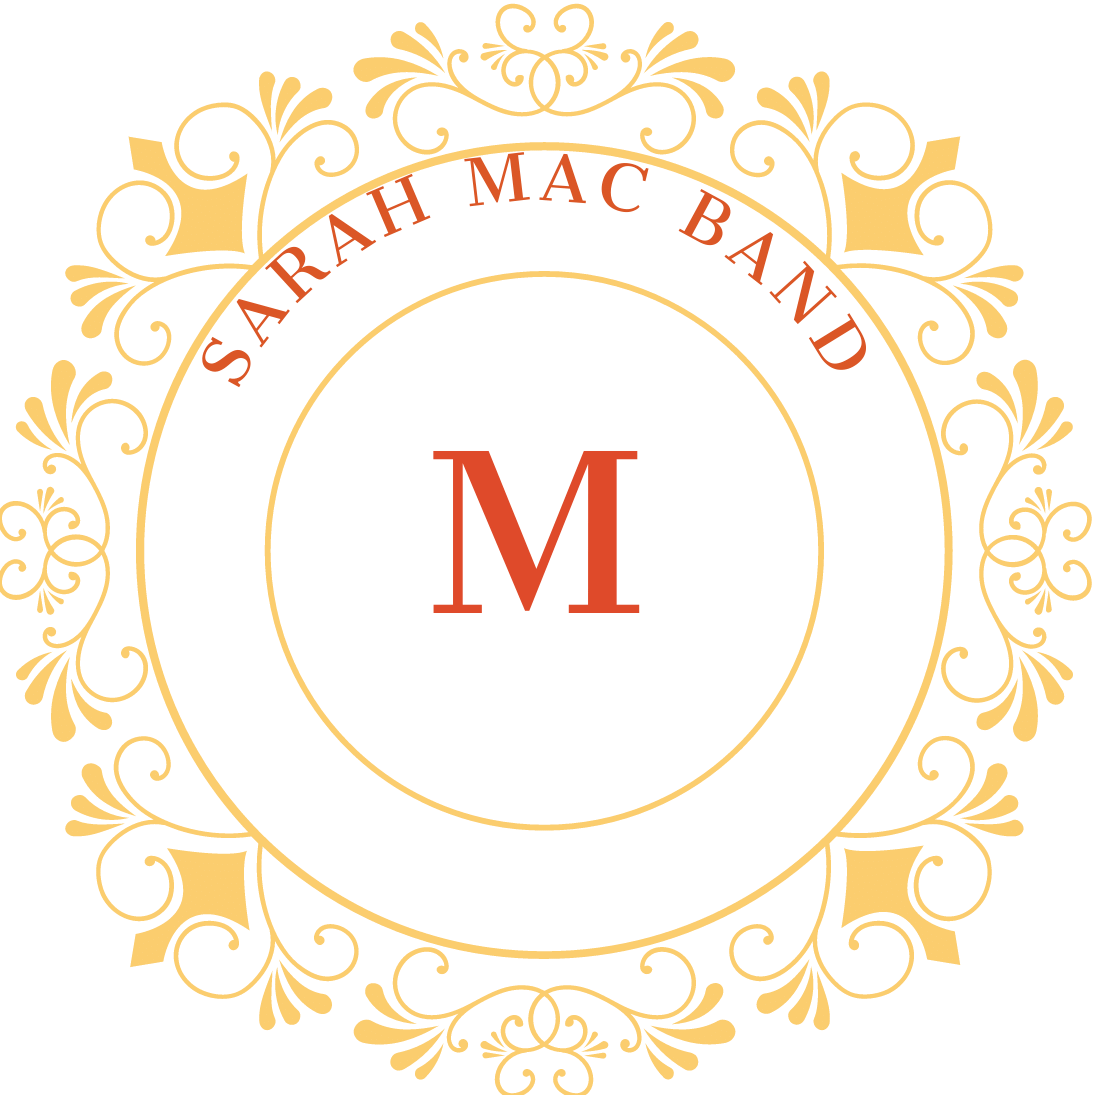 Sarah Mac Band